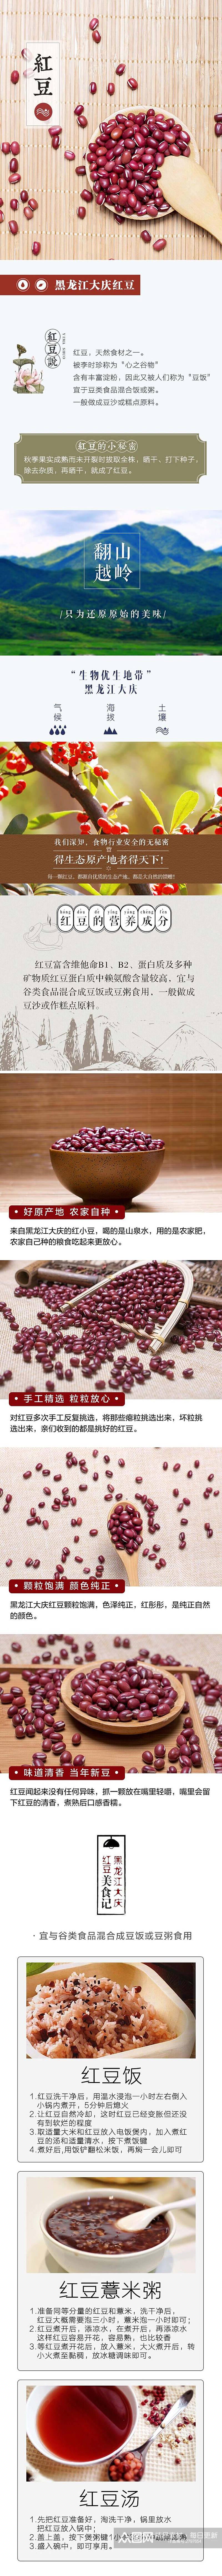 红豆电商食品详情页素材